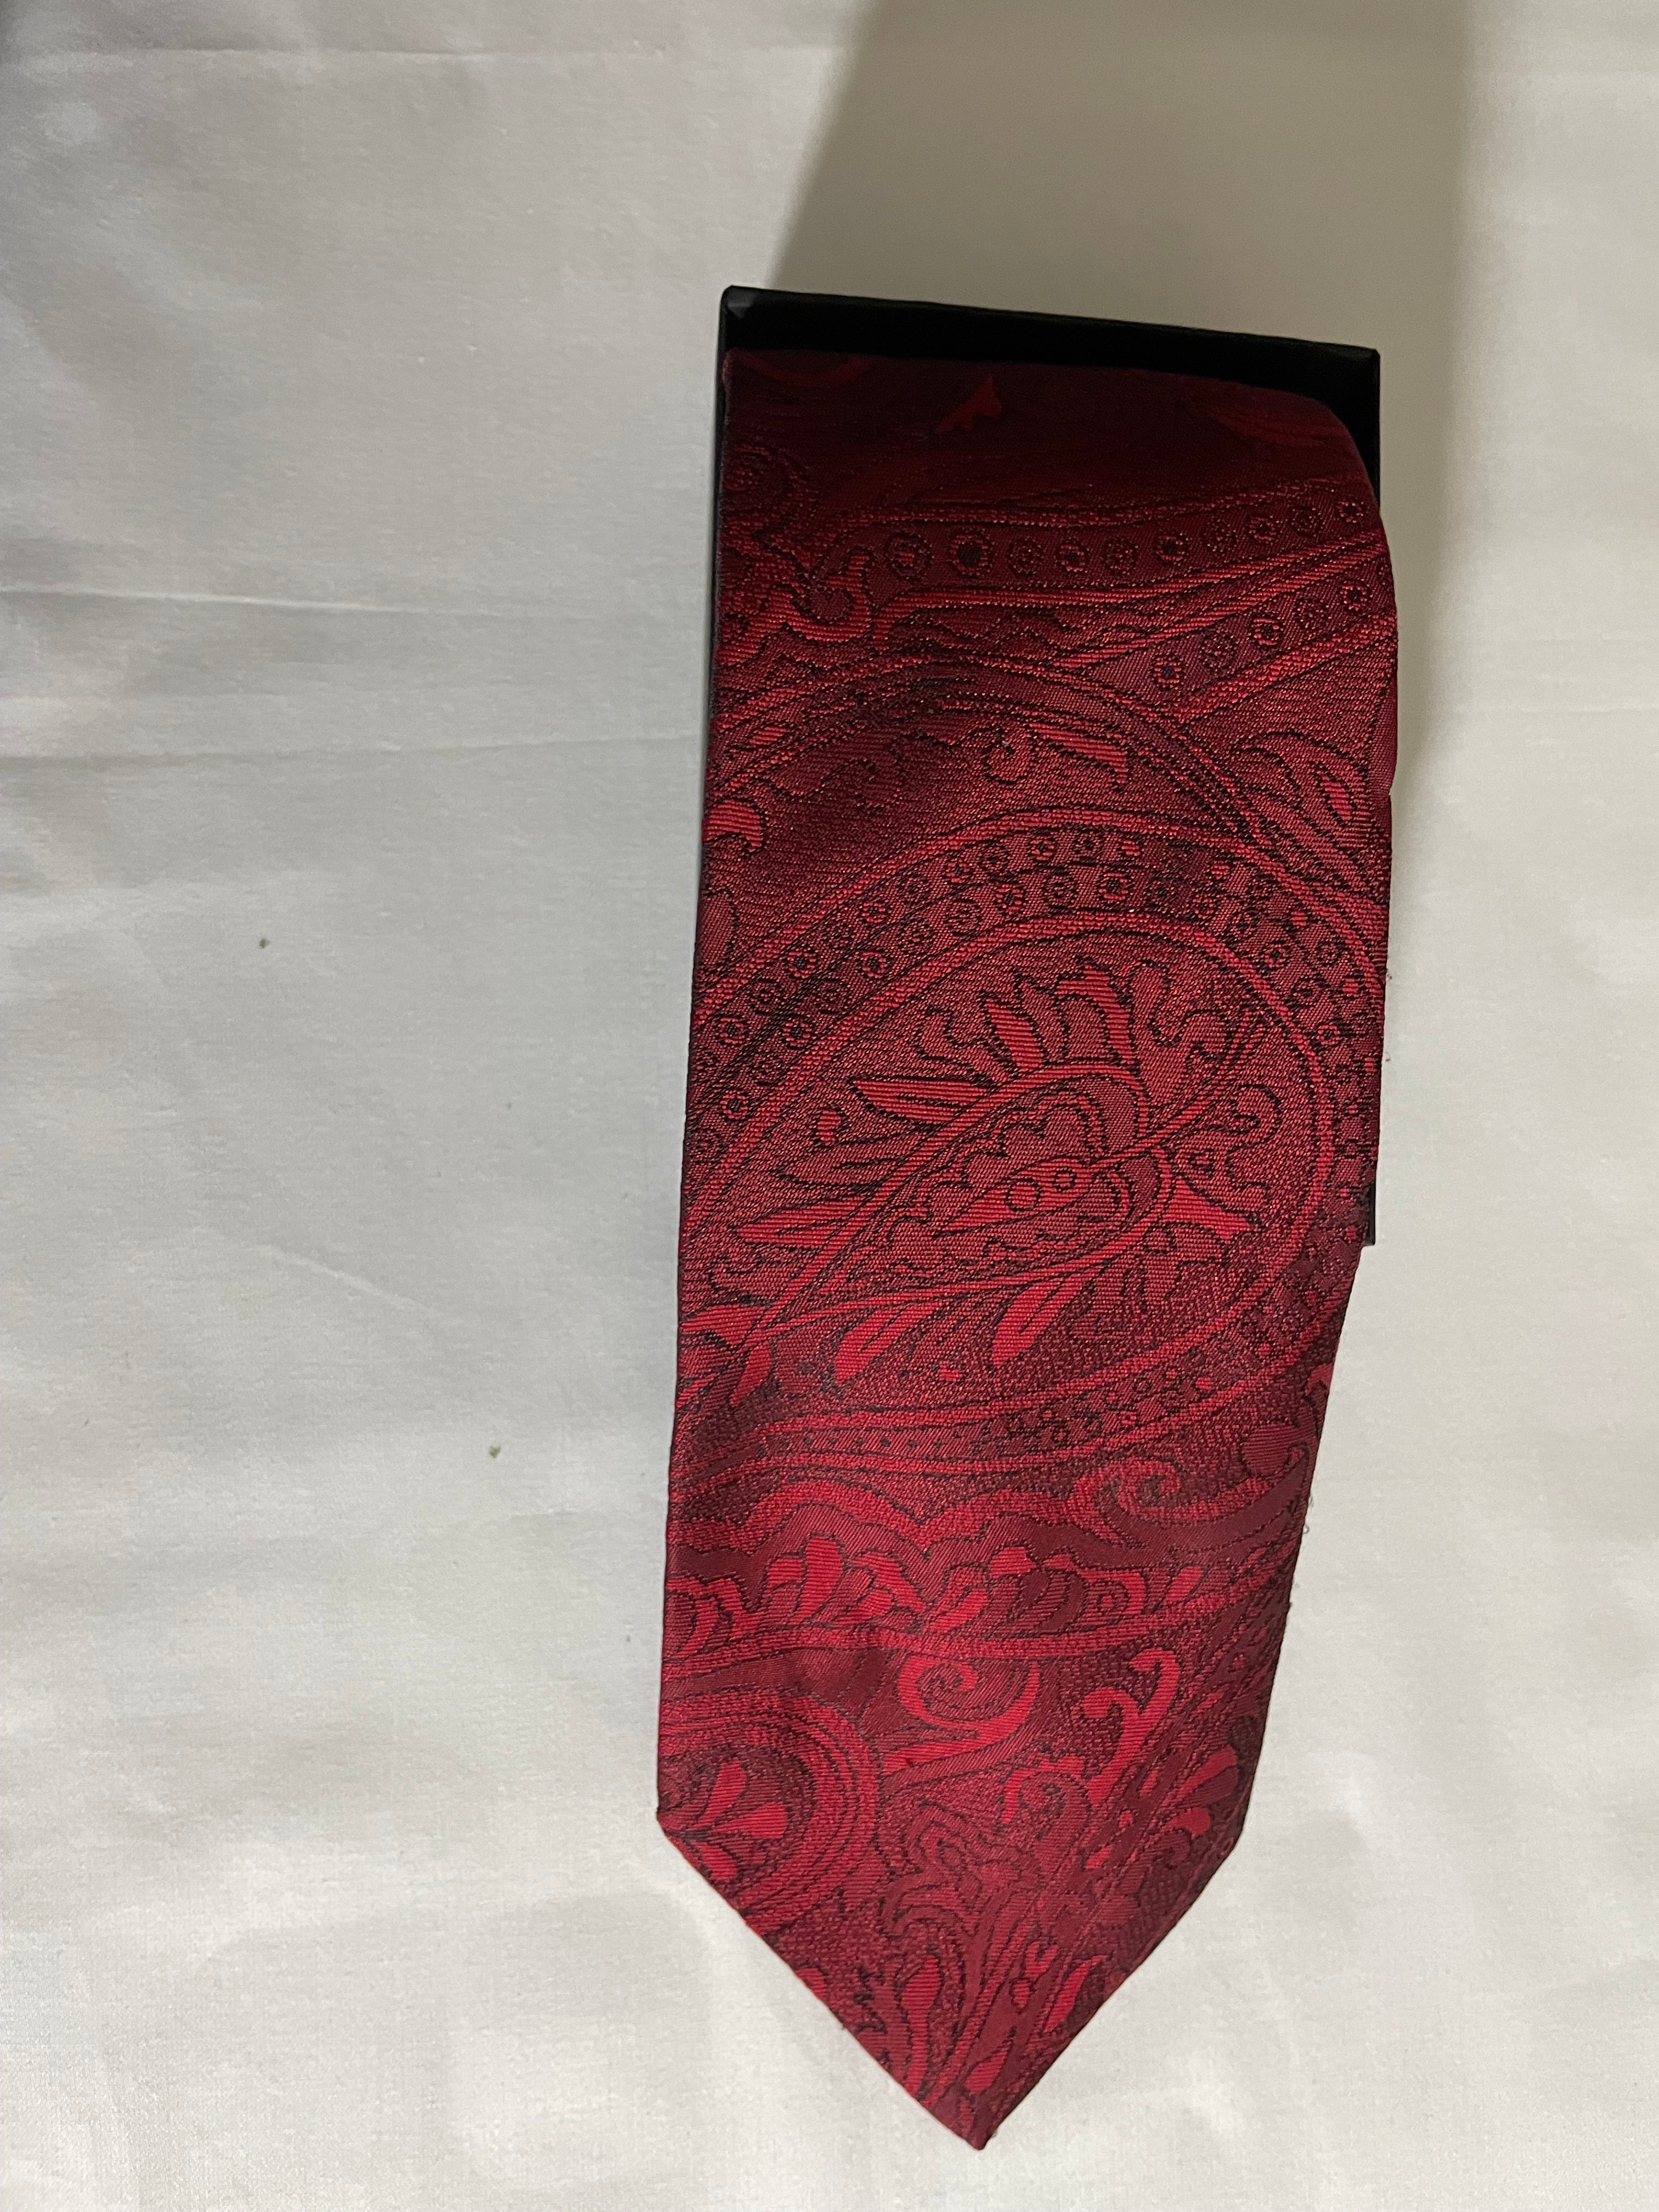 Oscar De La Renta Studio Red Paisley Classic Executive Necktie Tie